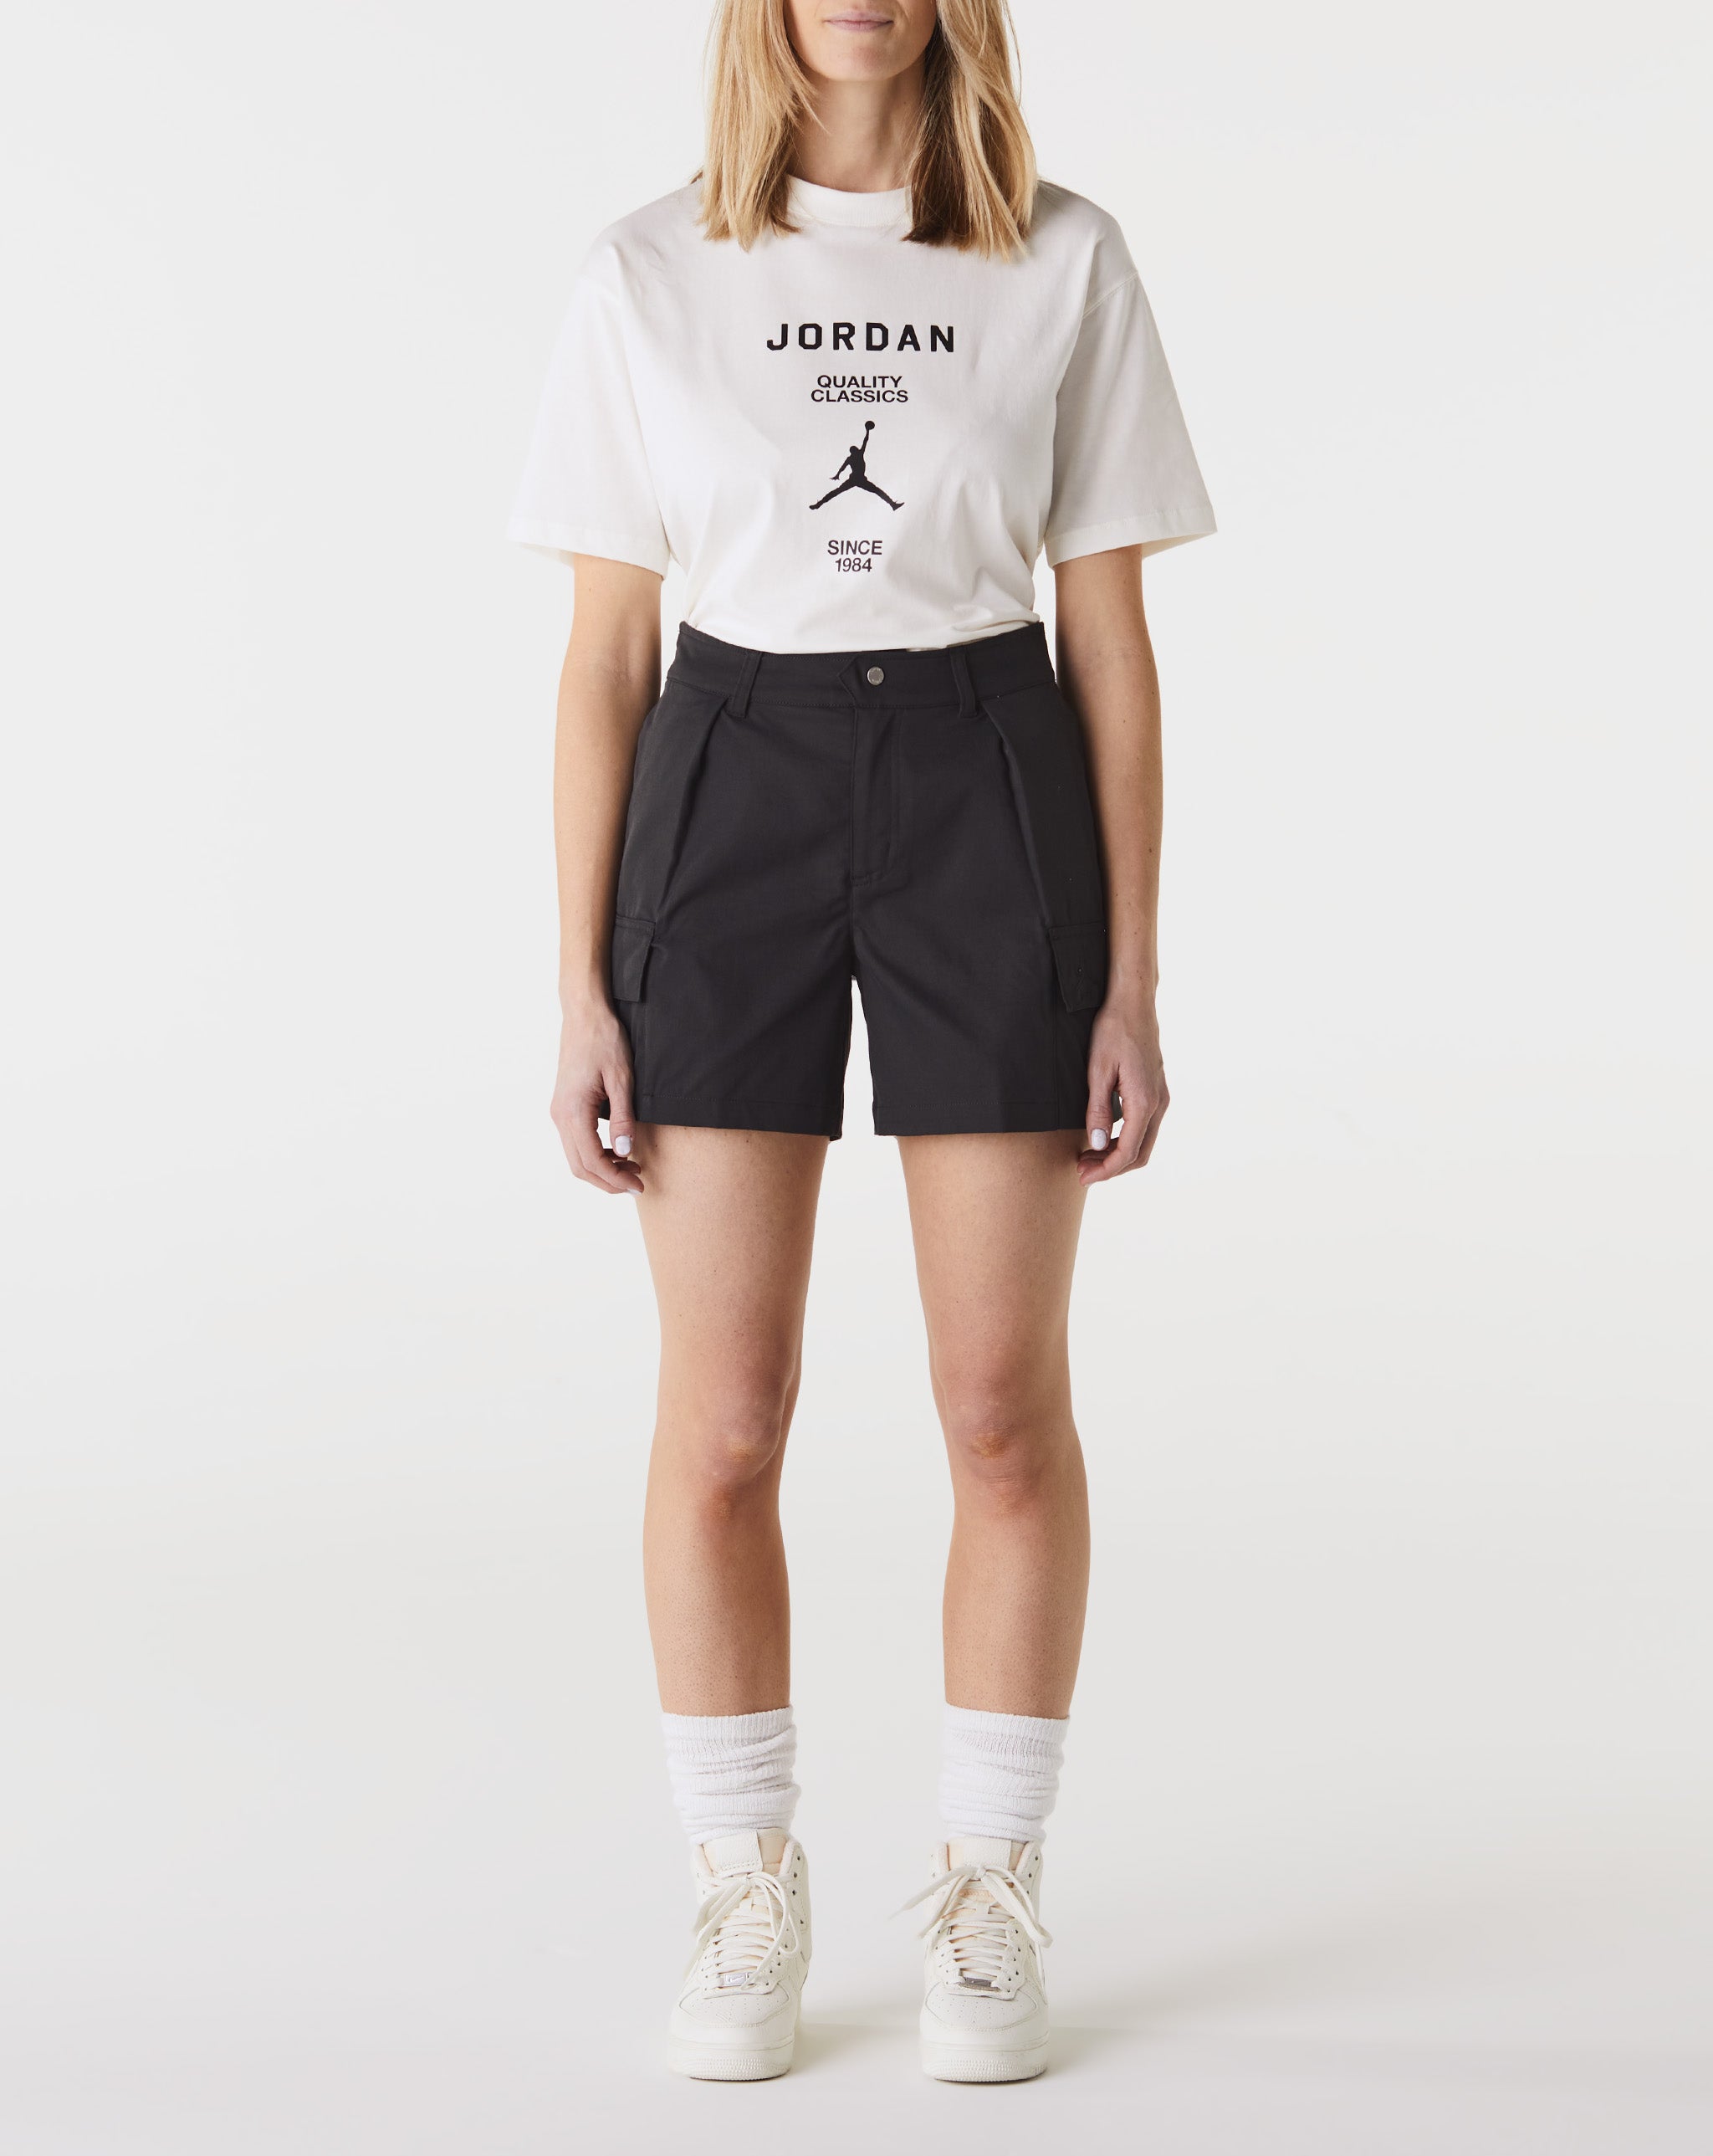 Jordan Brand reveals an official look a the Air Jordan 4 Zen Master releasing in March